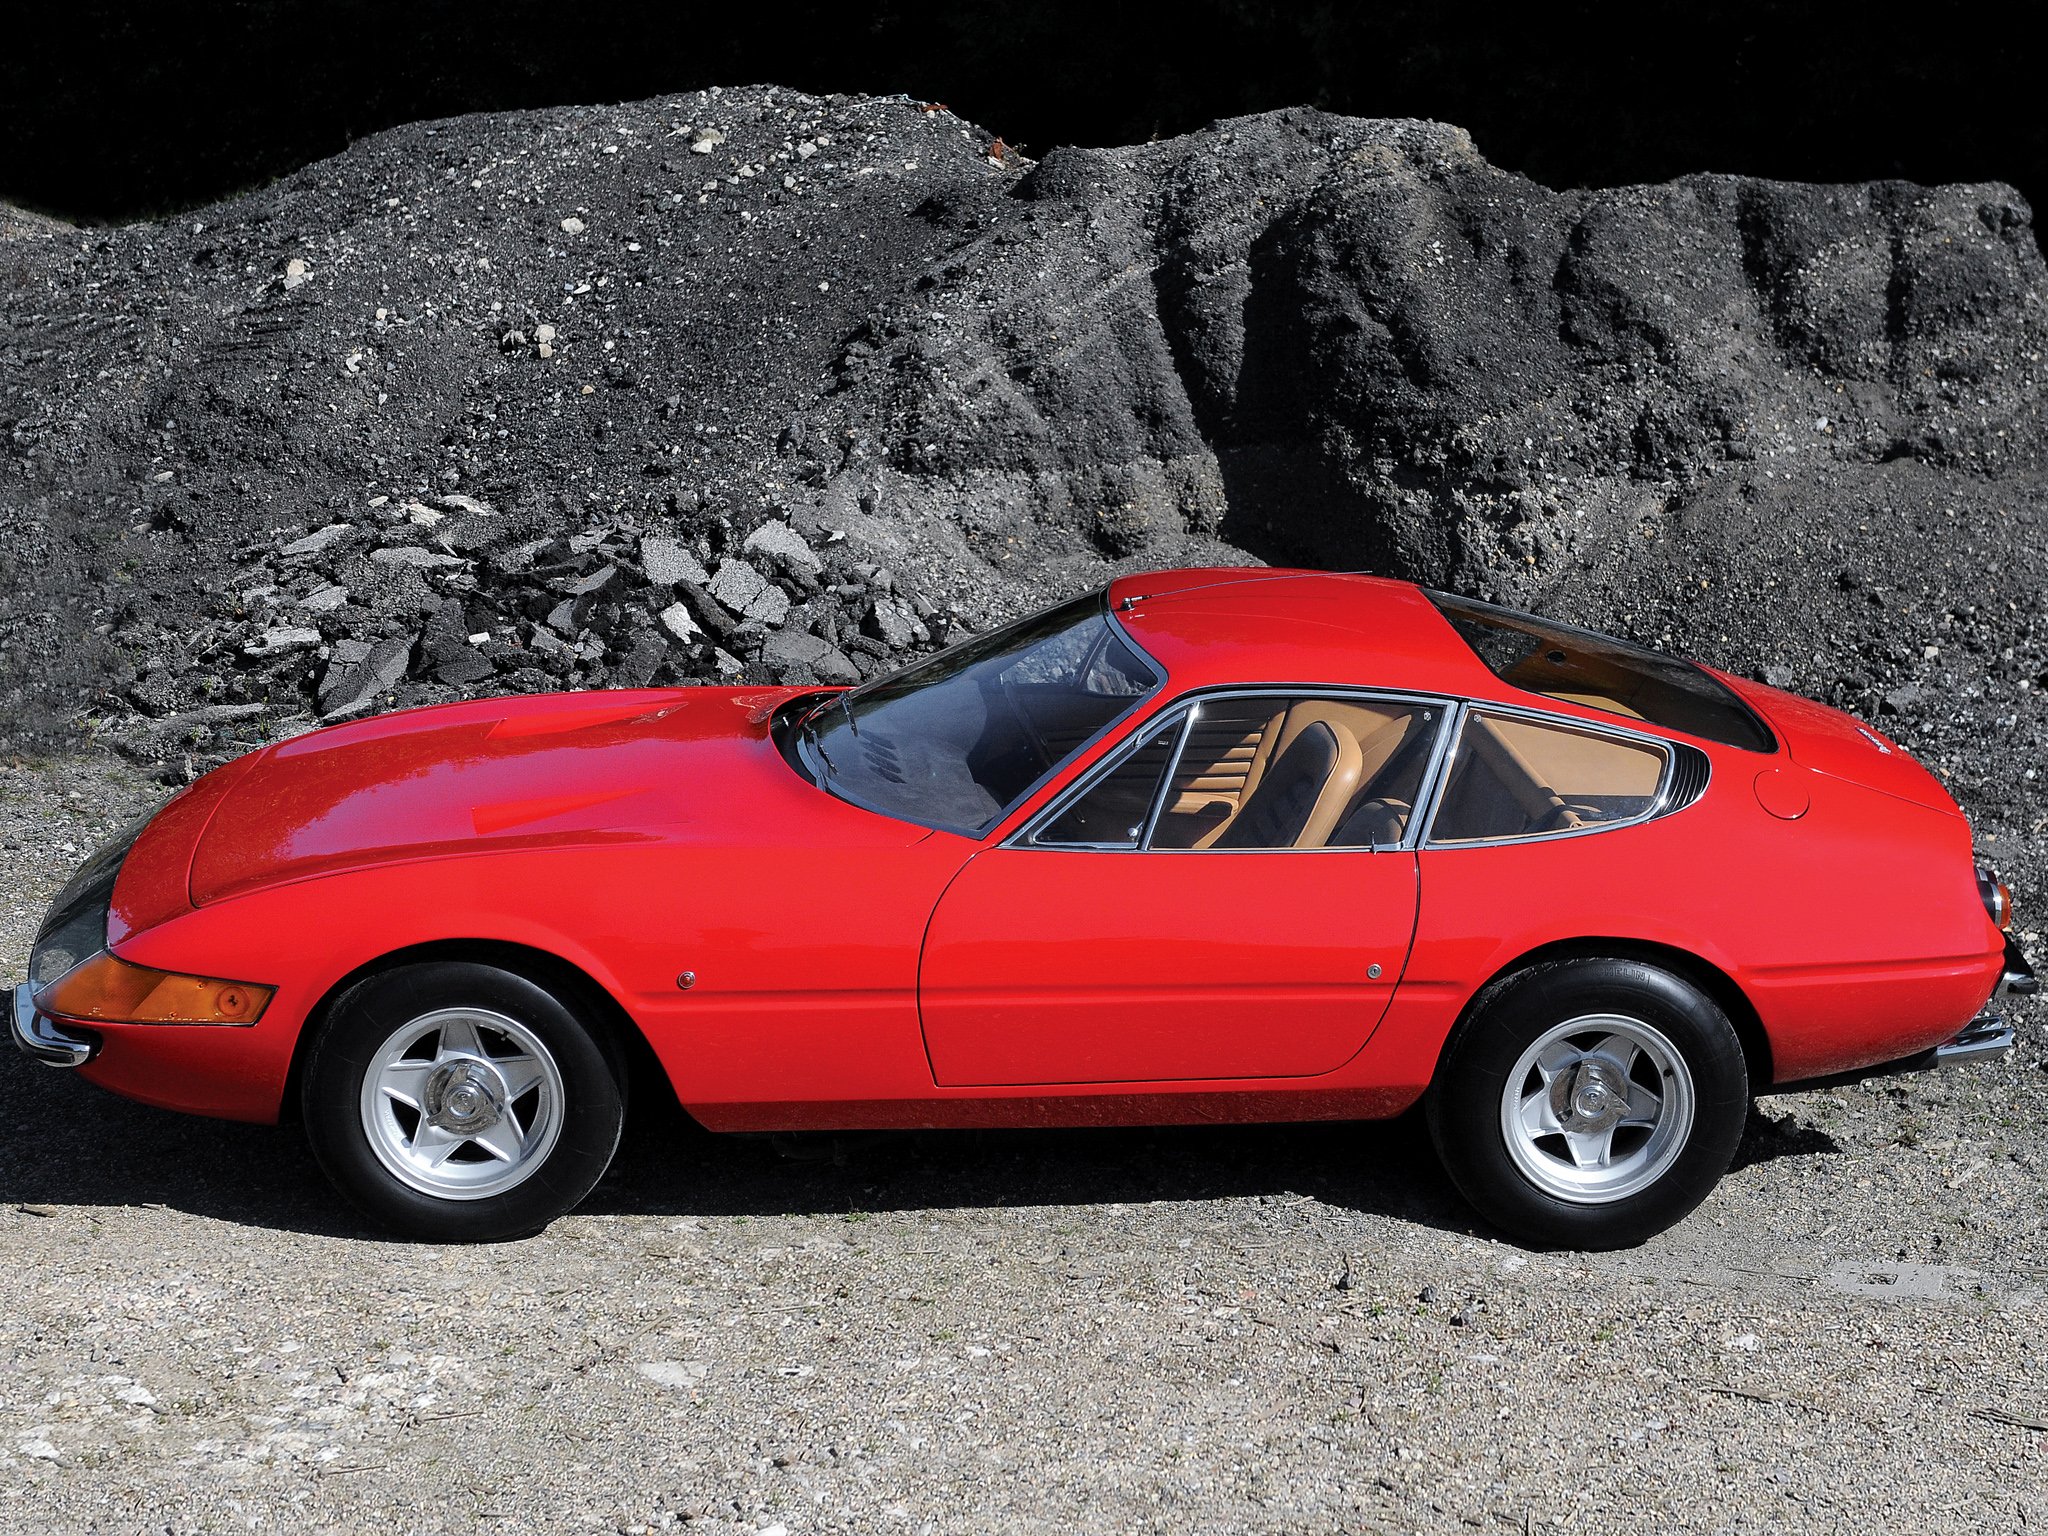 1968 71, Ferrari, 365, Gtb 4, Daytona, Uk spec, Supercar, Classic, Ff Wallpaper